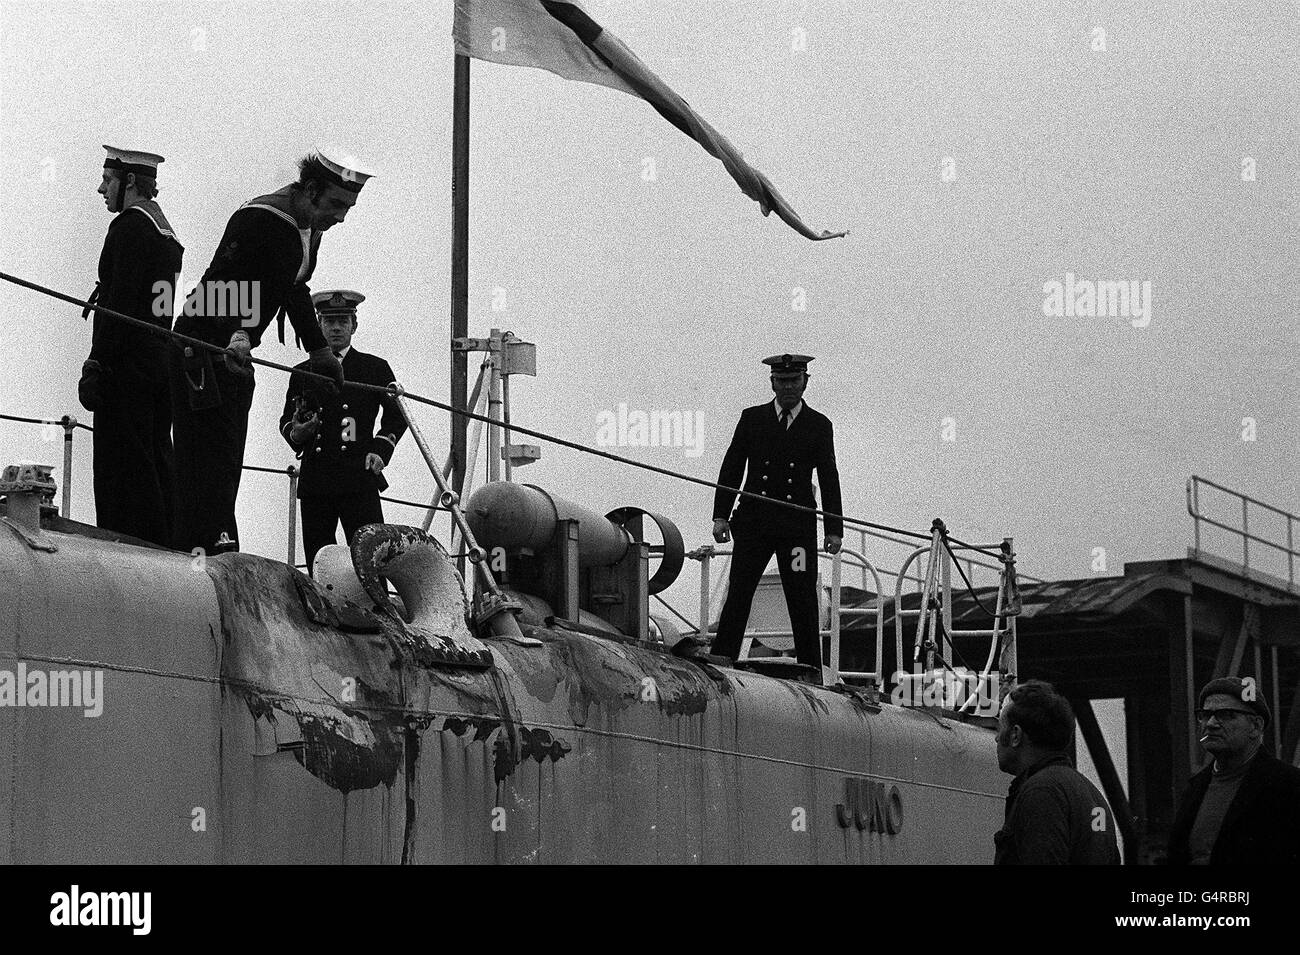 Oberflächliche Schäden, eine Erinnerung an den Cod war, auf der Hafenseite der in Chatham ansässigen Fregatte HMS Juno, als sie in Hull anliegt. Die Fregatte war gerade dabei, von einer Dienstreise vor Island abzustimmen, wo sie zweimal an einem Nachmittag vom isländischen Kanonenboot Tyr getroffen wurde. Stockfoto